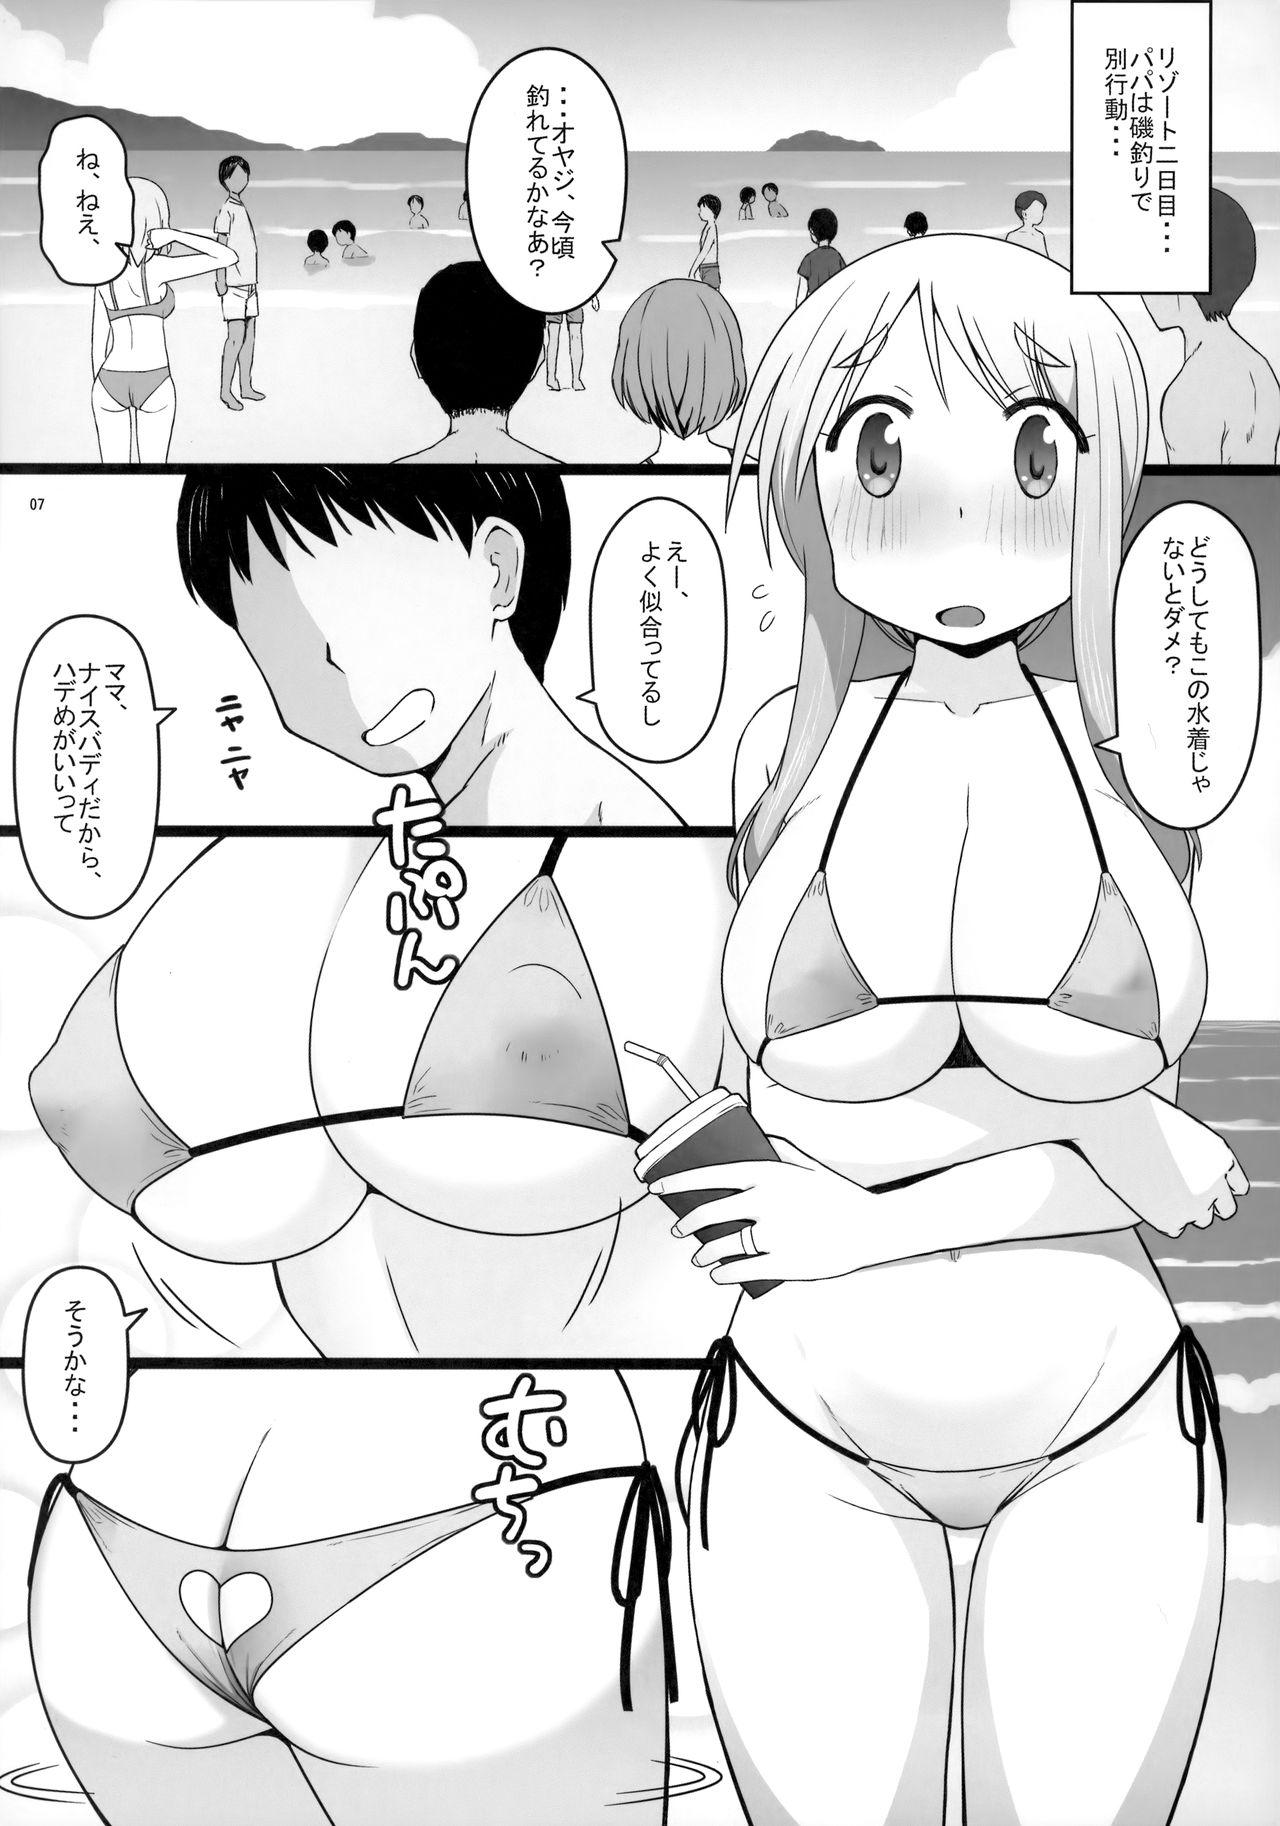 Euro Porn Angel's stroke 129 DSY2 bakku daisuki! Giri no musuko to beddo ni shizumu gosai haha Yoriko-chan! ! - Yuyushiki Daring - Page 8